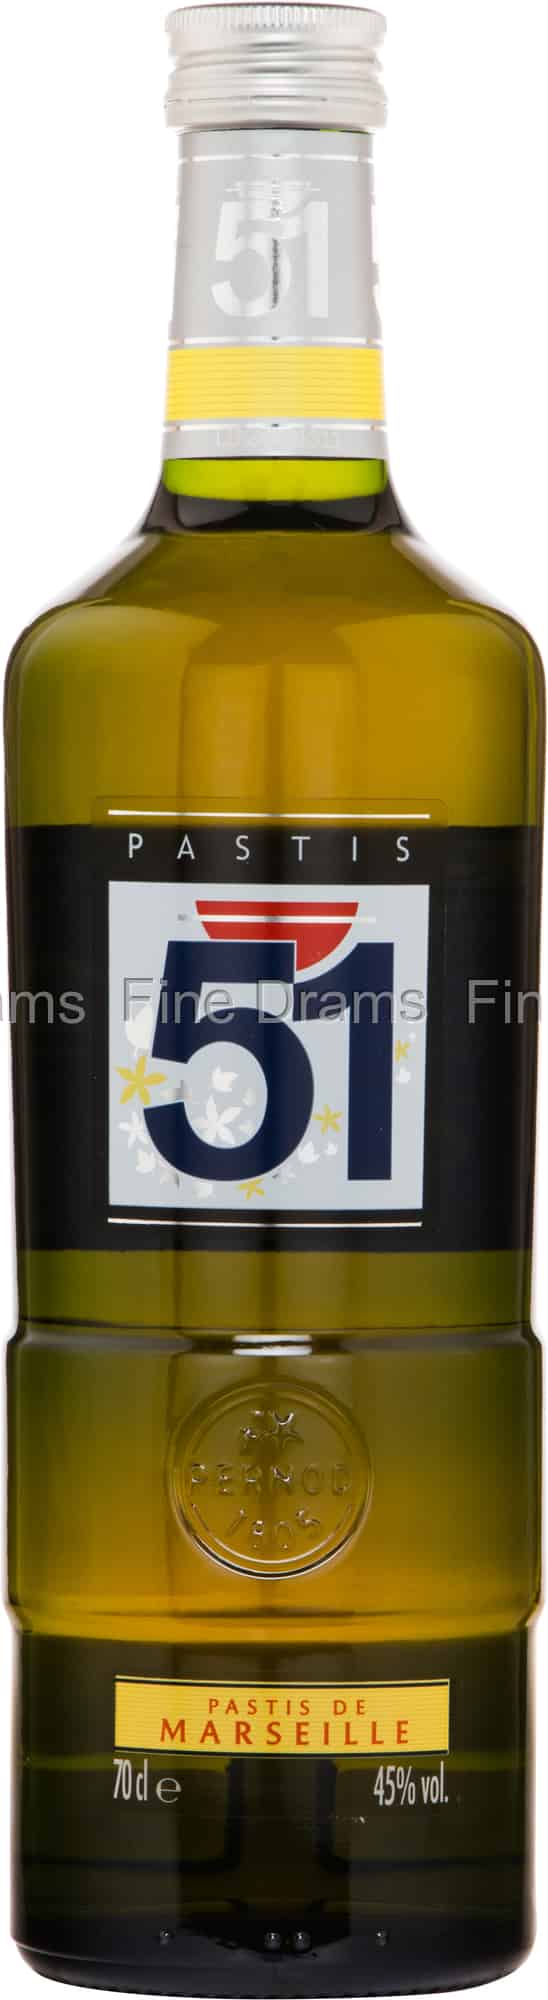 PASTIS 51 Pack Apéritif anisé Pastis de Marseille + 6 verres + 1